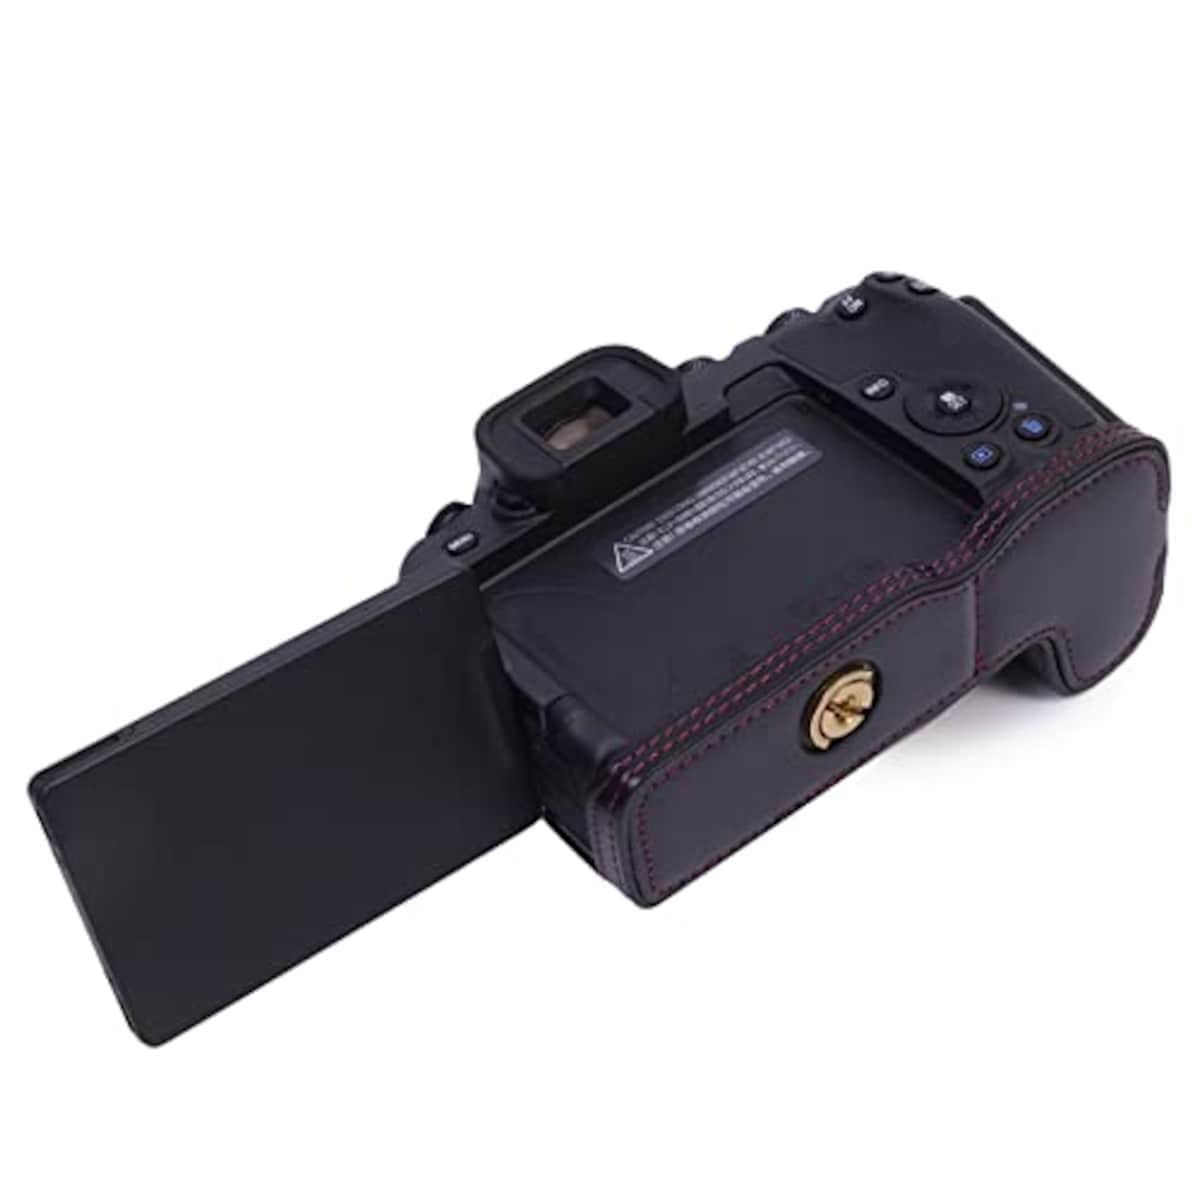  Rieibi Canon EOS R8 ケース、eos r8 ケース eos r8ボディケース PUレザーカメラハーフケース eos r8 PUケース Eosr8 カバー バッテリー交換可能 三脚設置でき 底面開閉 ４色展開 PUレザー eos r8 ハーフケースアウトドア撮影用(ブラック)画像6 